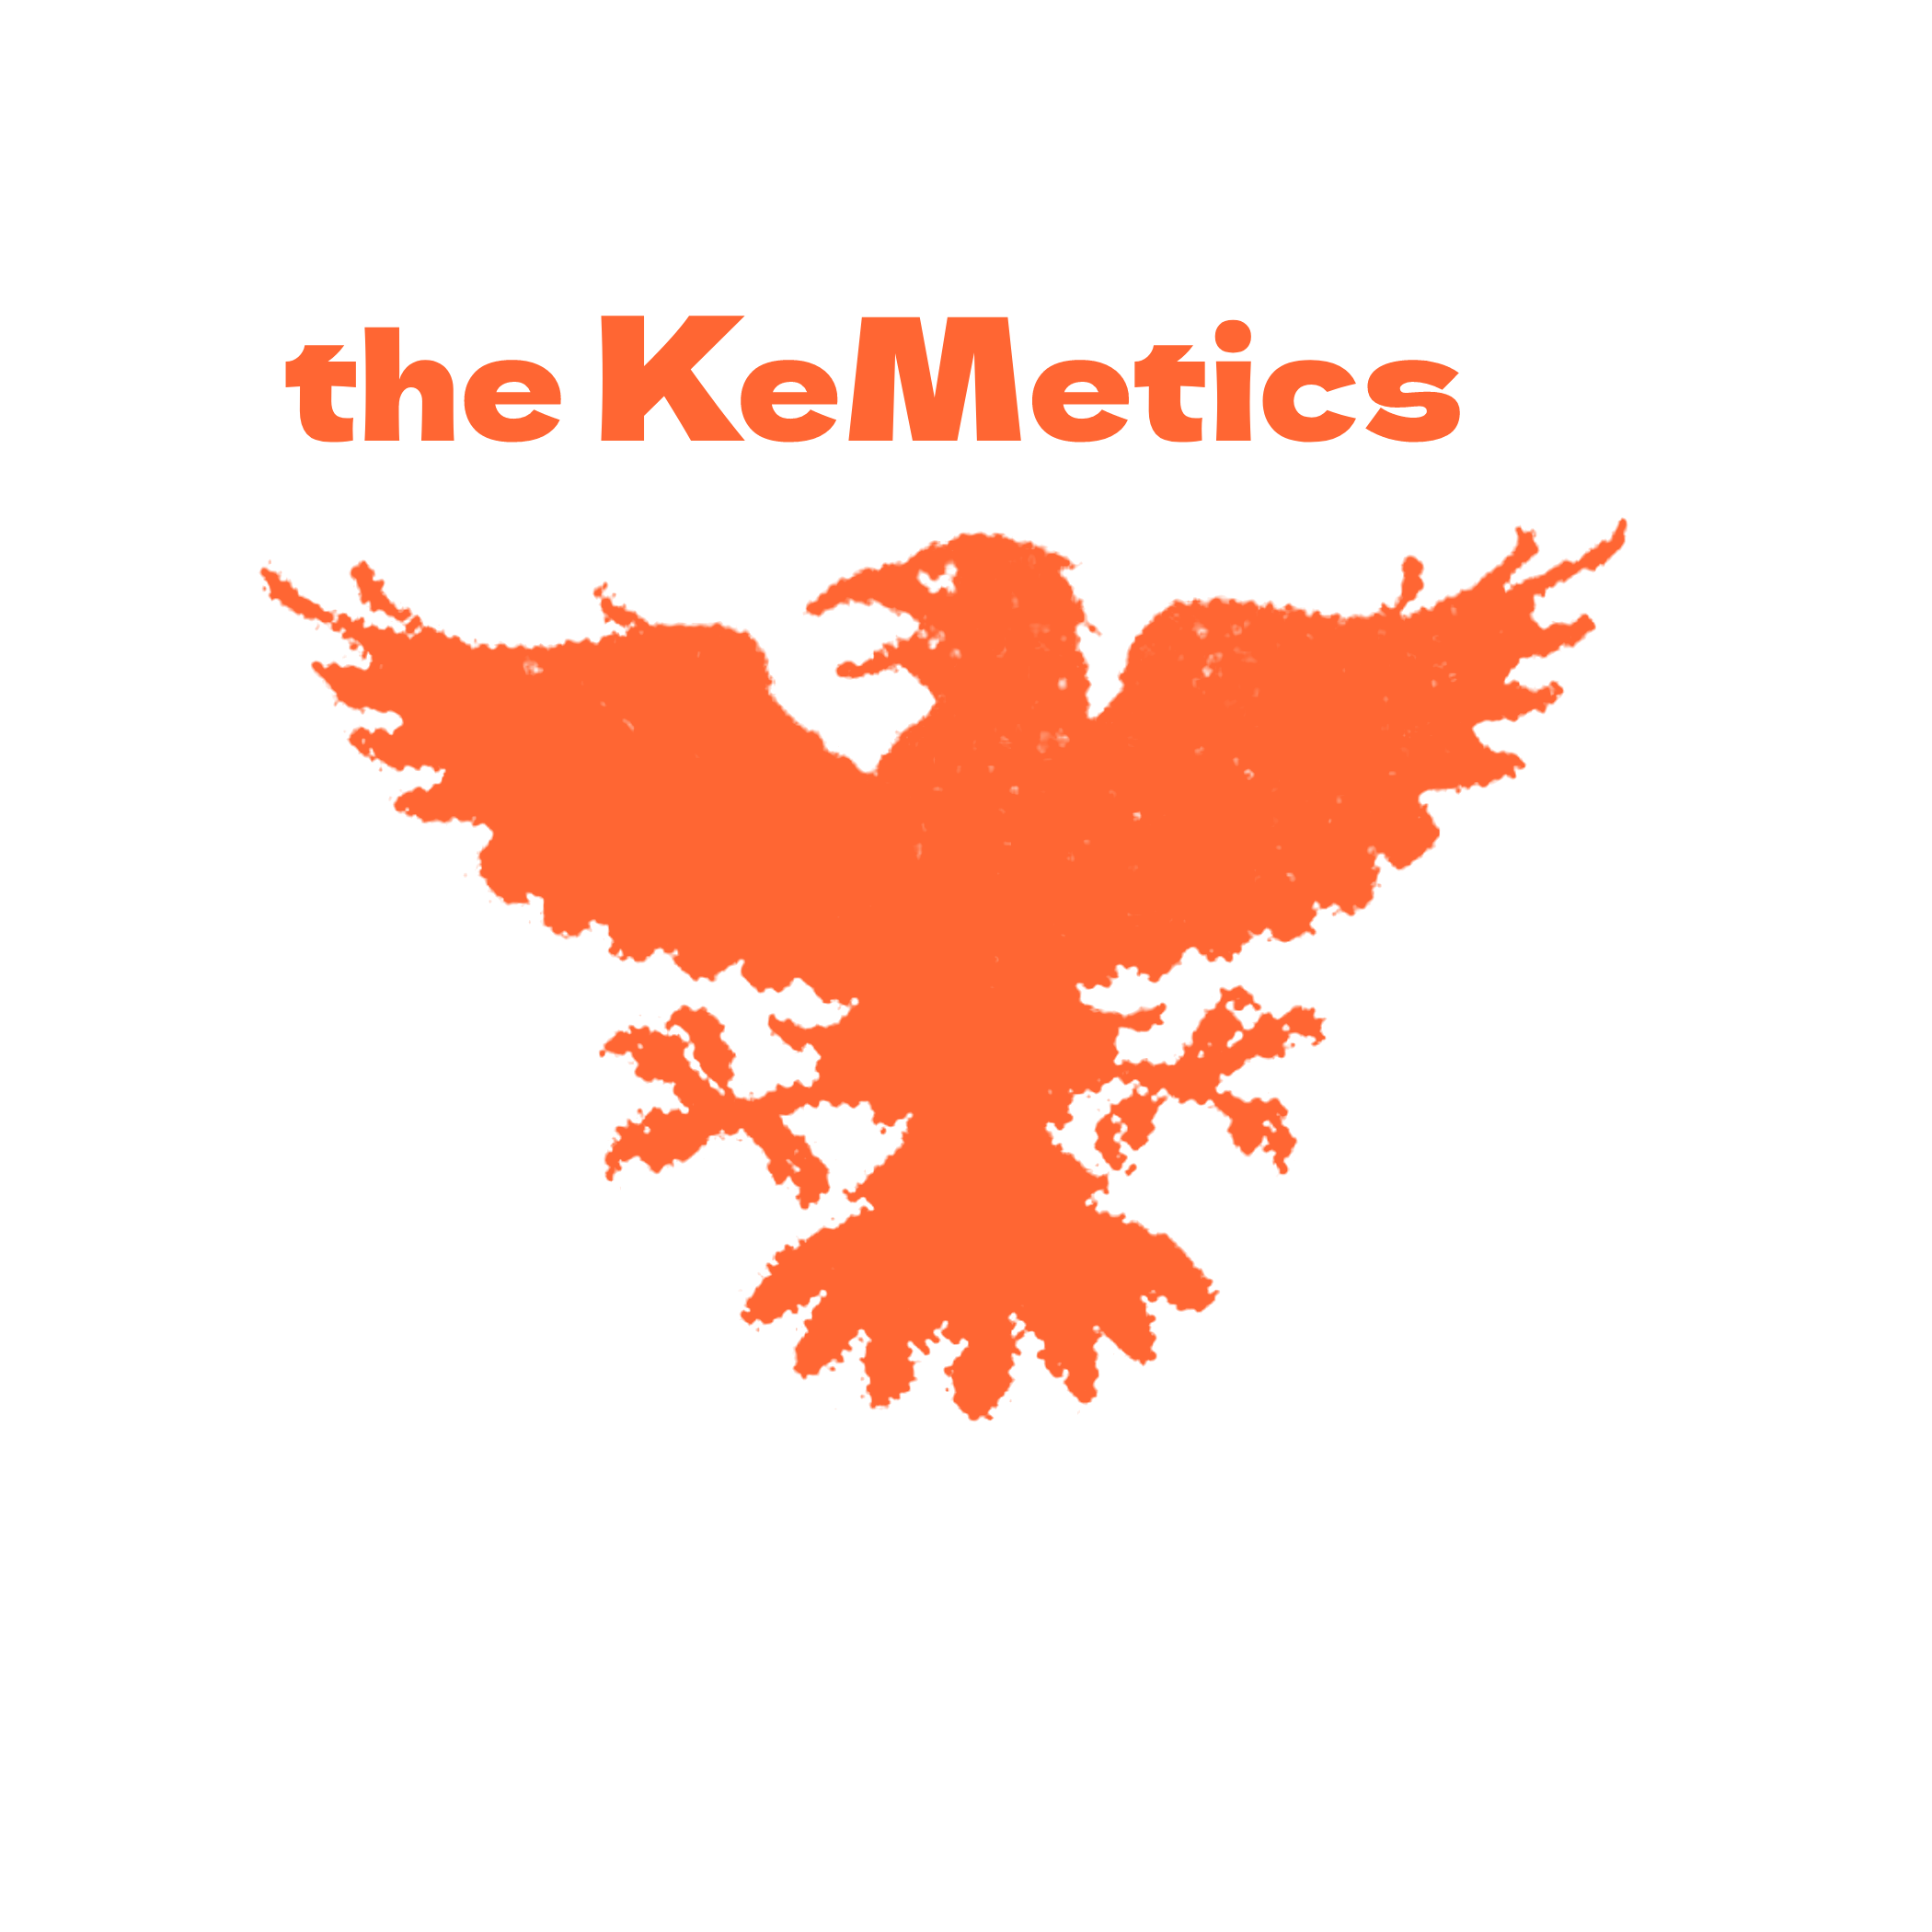 The KnMetics